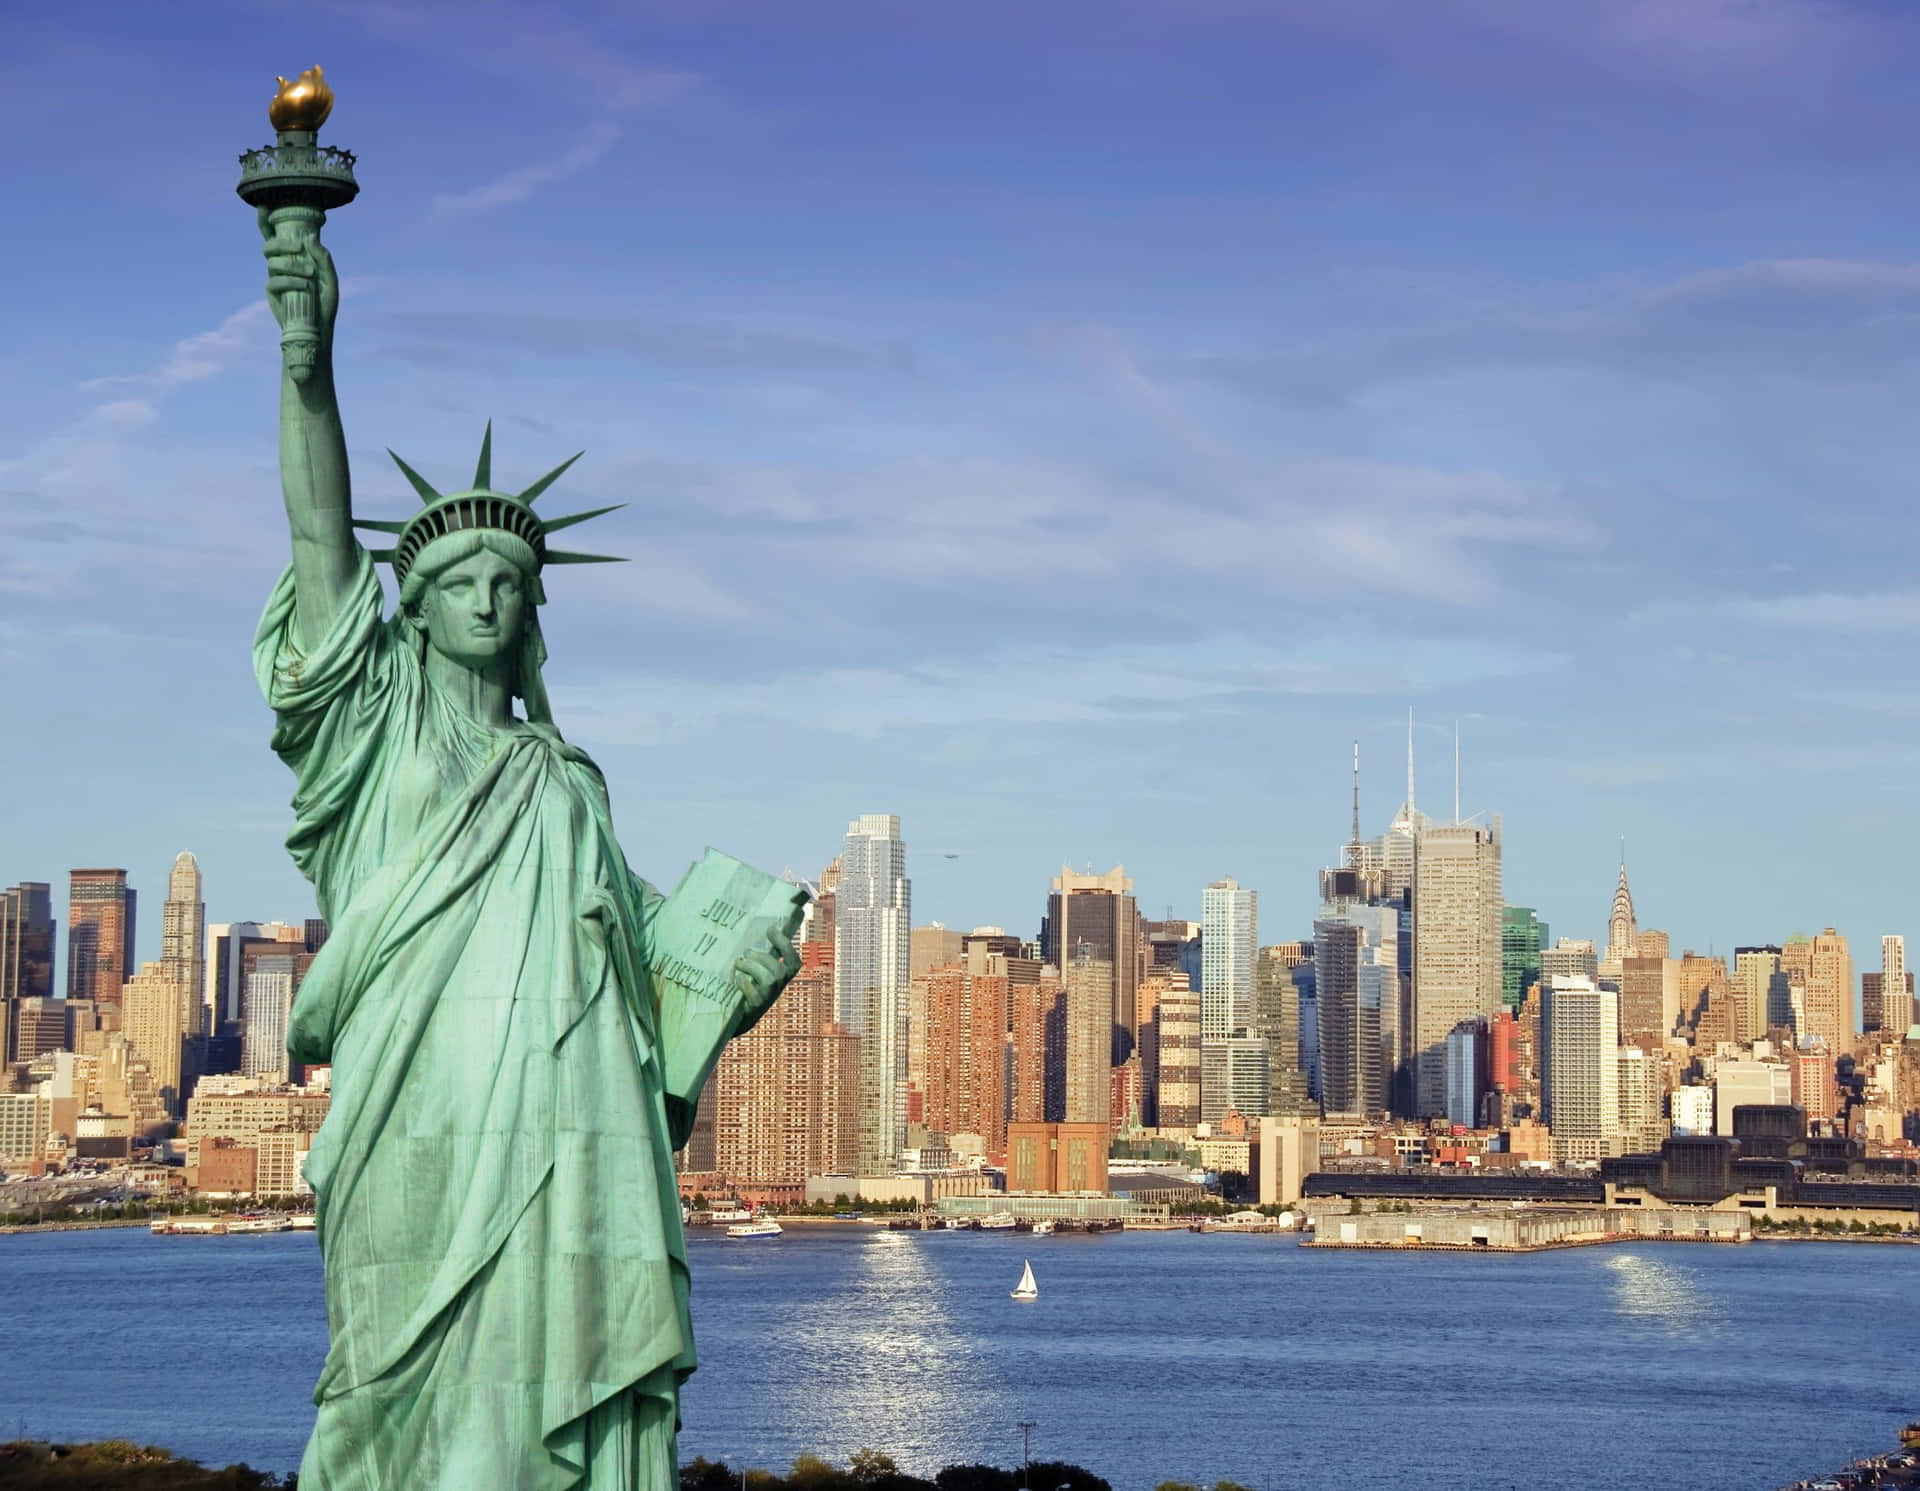 Laiconica Statua Della Libertà Si Erge Alta Nel Porto Di New York, Simbolo Di Libertà, Democrazia E Speranza.